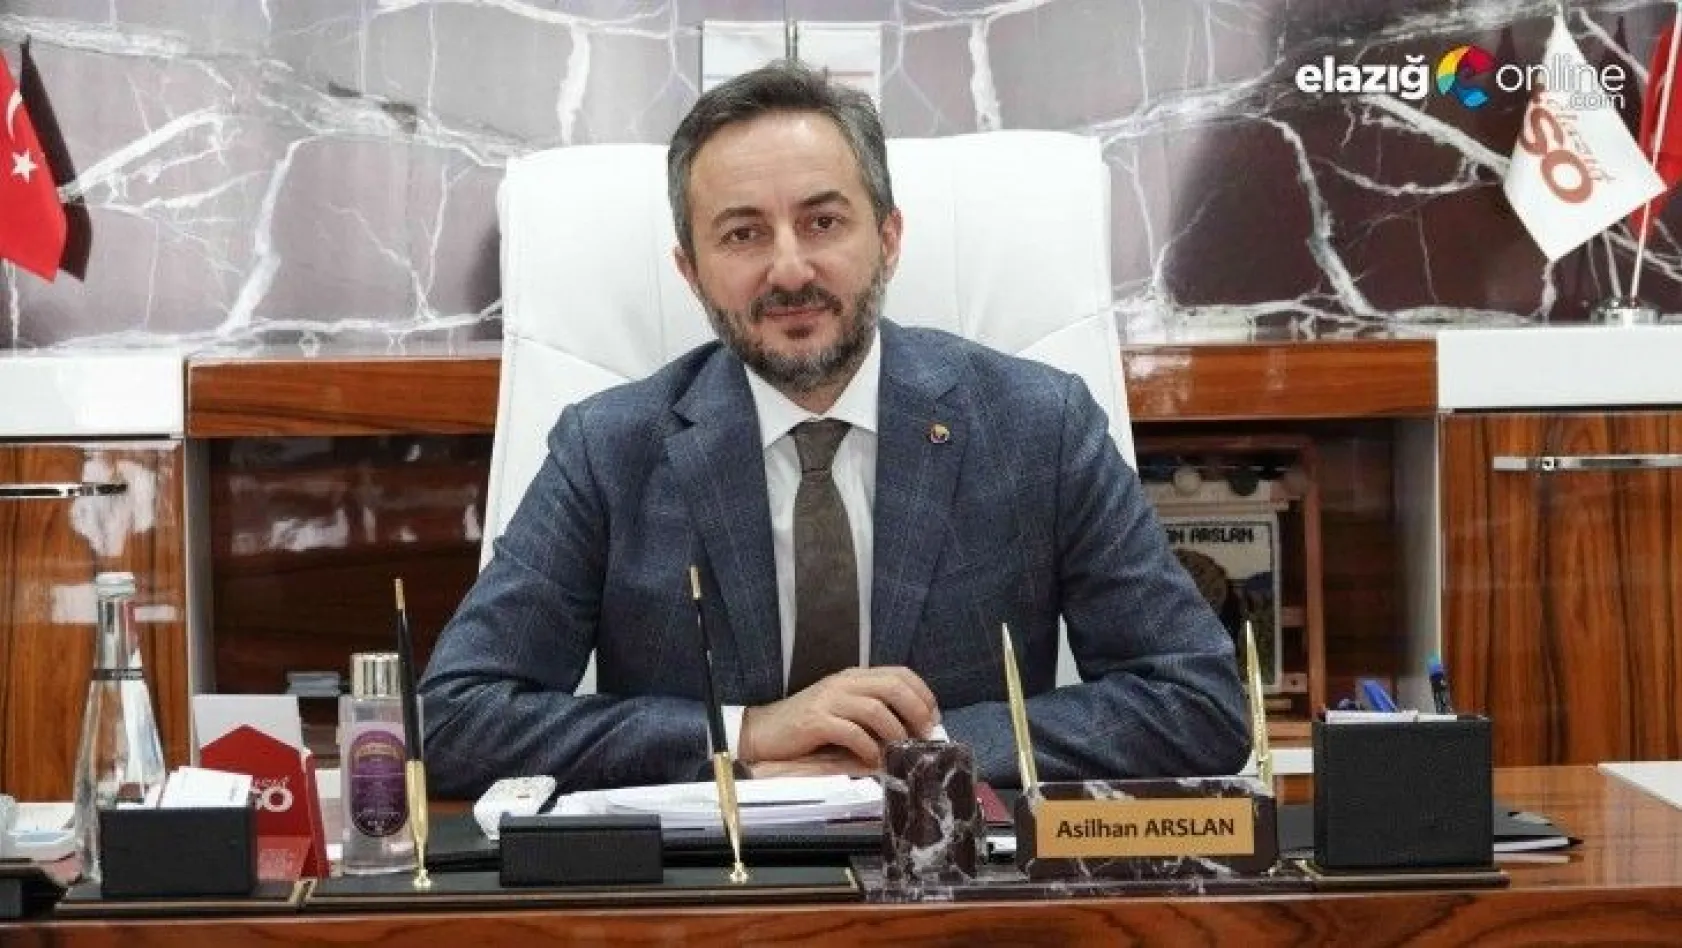 Elazığ TSO Başkanı Arslan: Kısa çalışma ödeneği, iş dünyası için çok önemli bir destek